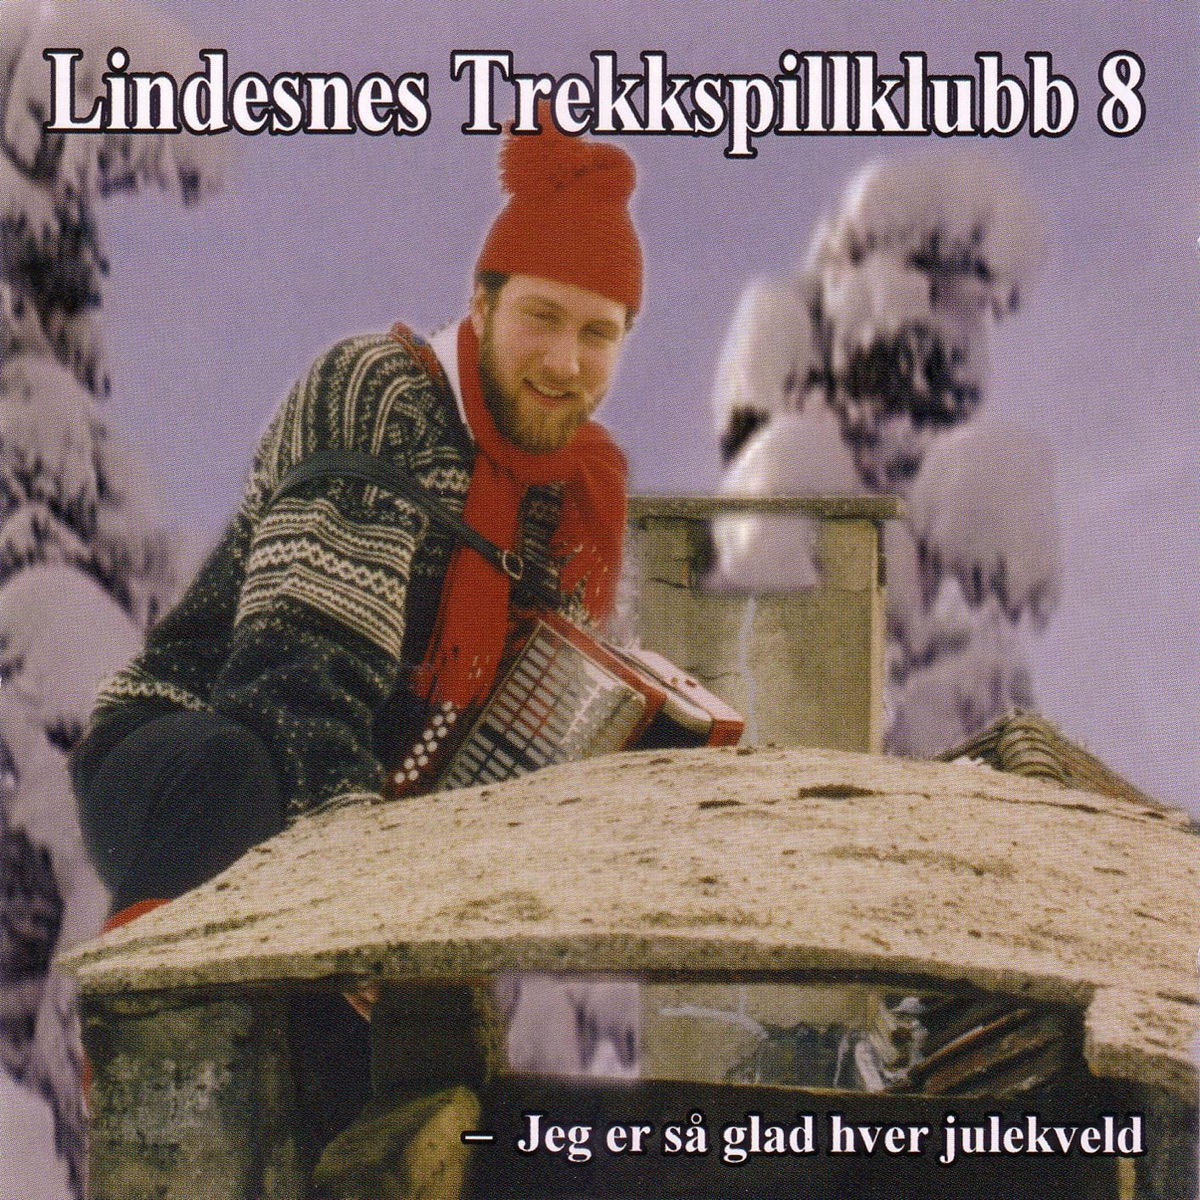 Lindesnes Trekkspillklubb 5 - Den Glade Vandrer (Live Fra Agder Teater) by Lindesnes  Trekkspillklubb on Apple Music